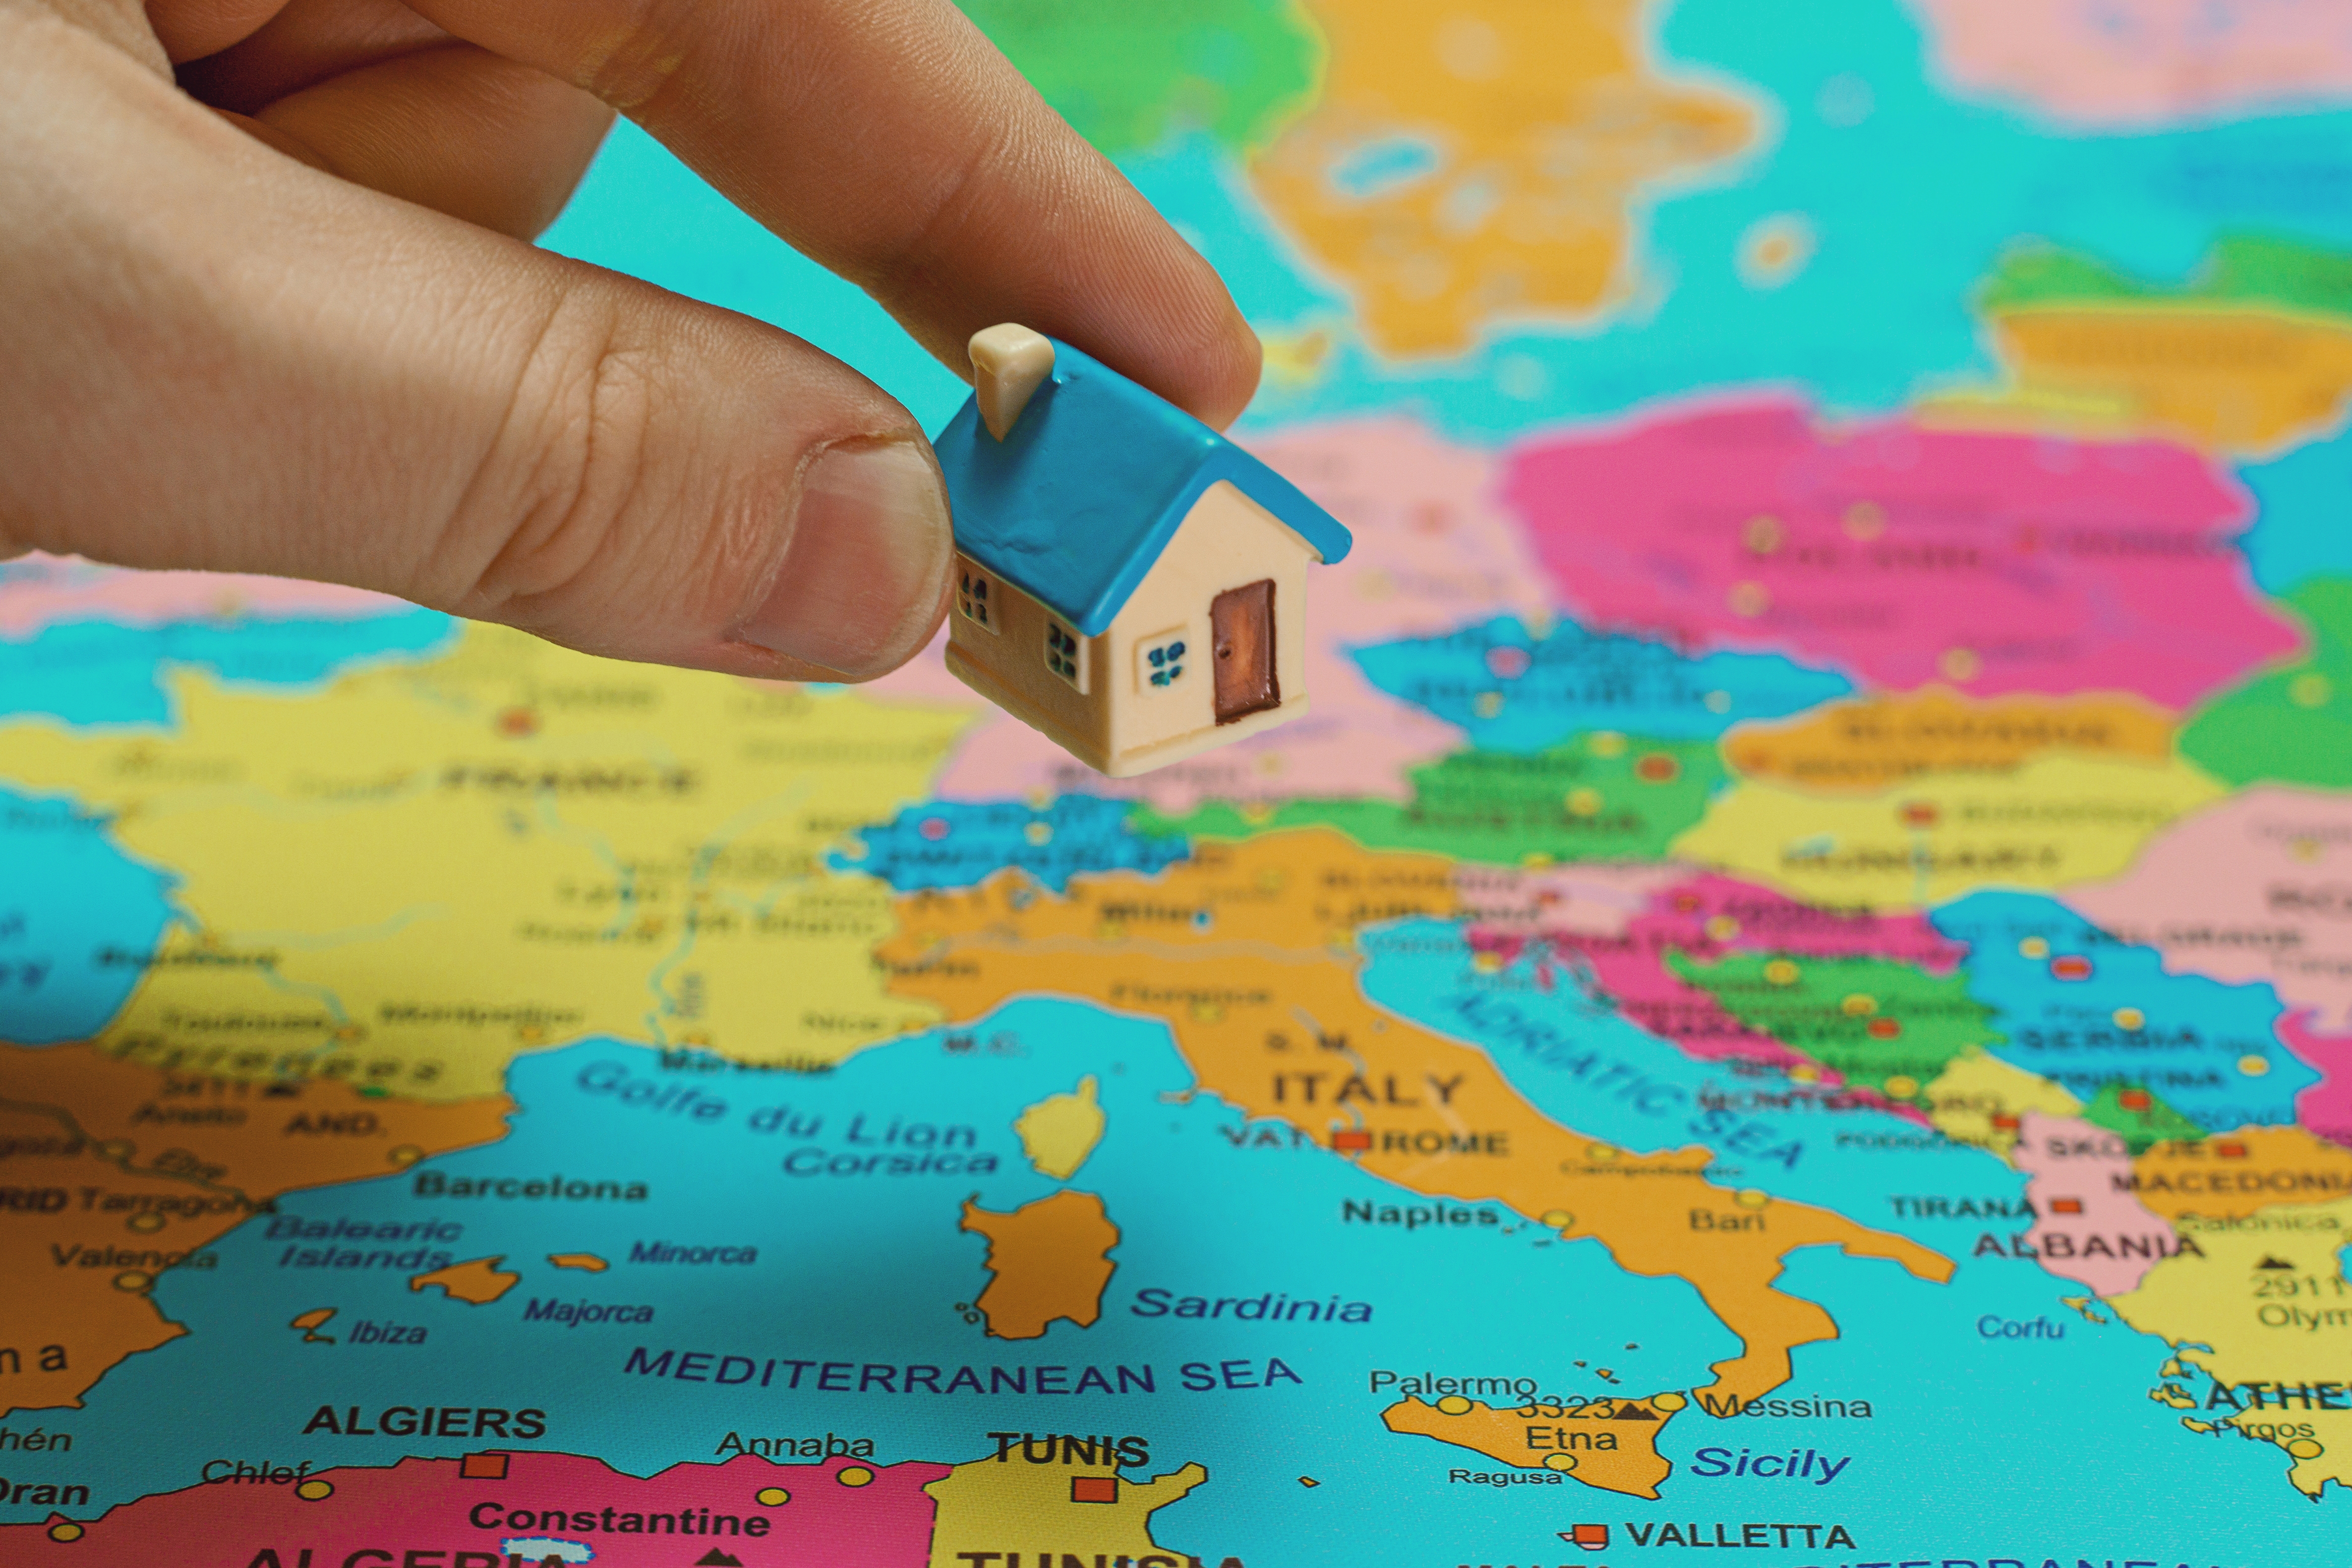 ВНЖ в Европе при покупке недвижимости: где и как можно получить, условия, стоимость